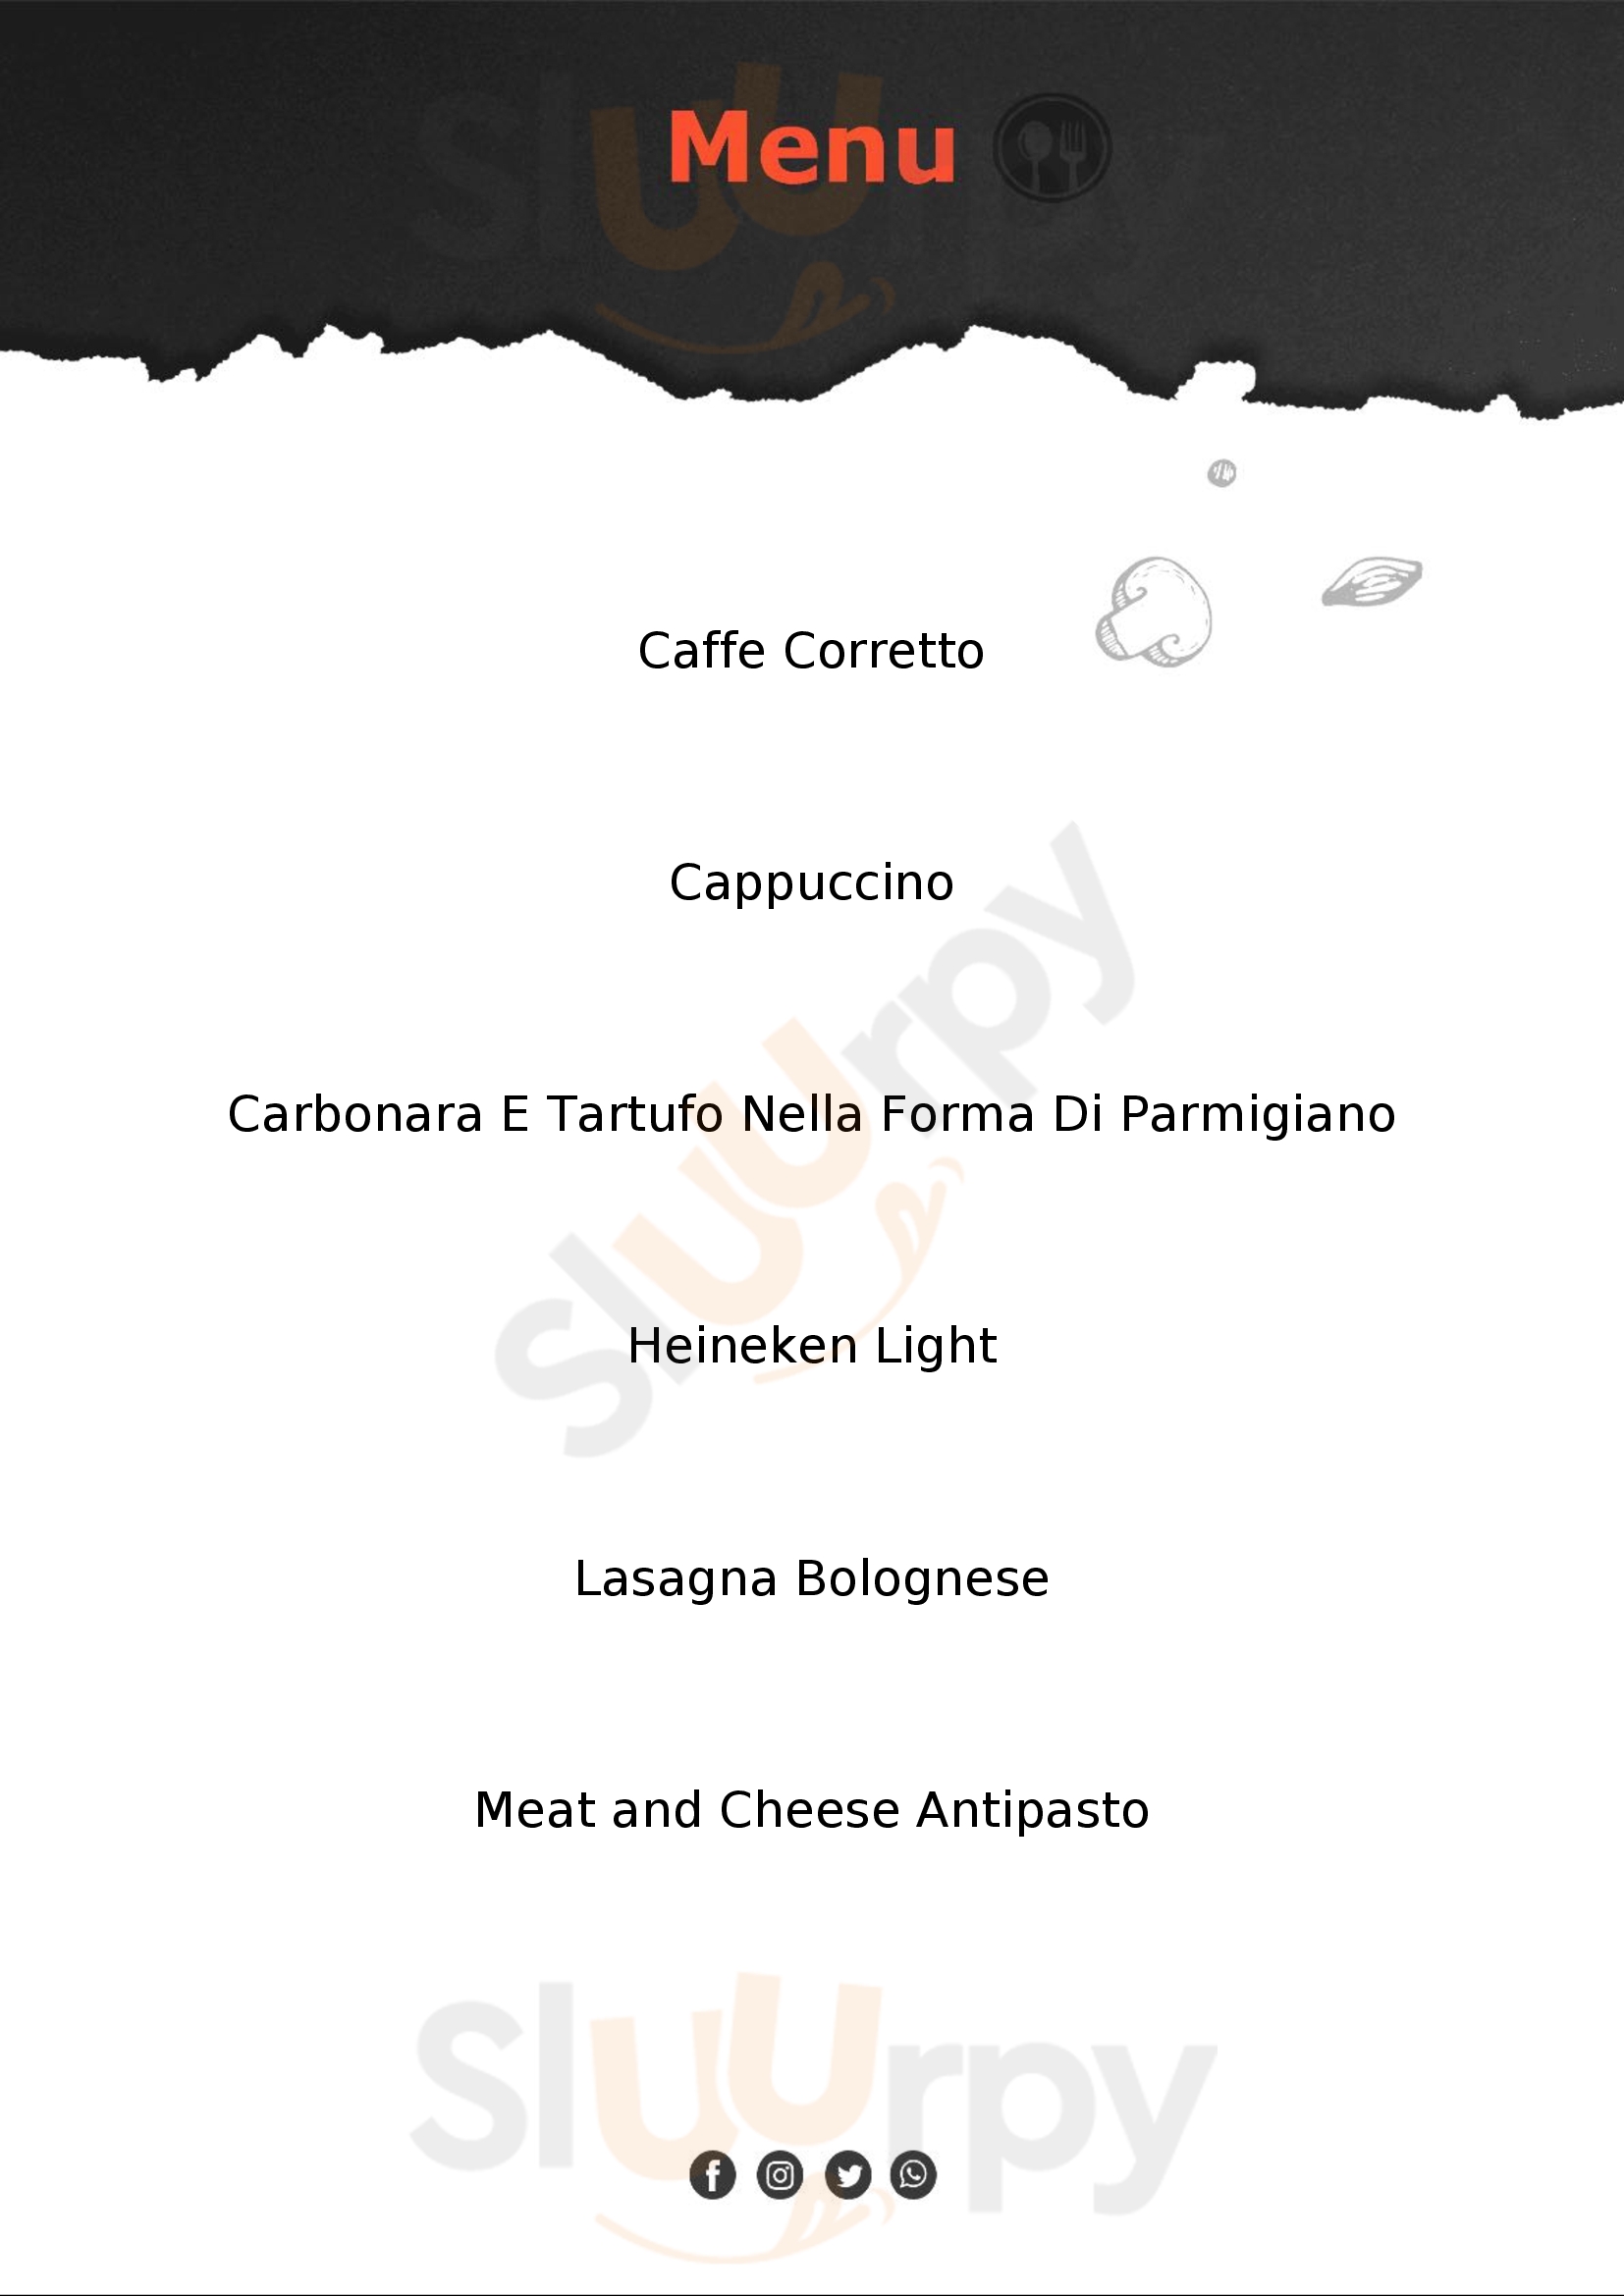 Giuseppe Pizzeria & Sicilian Roast - Iloilo City Iloilo City Menu - 1